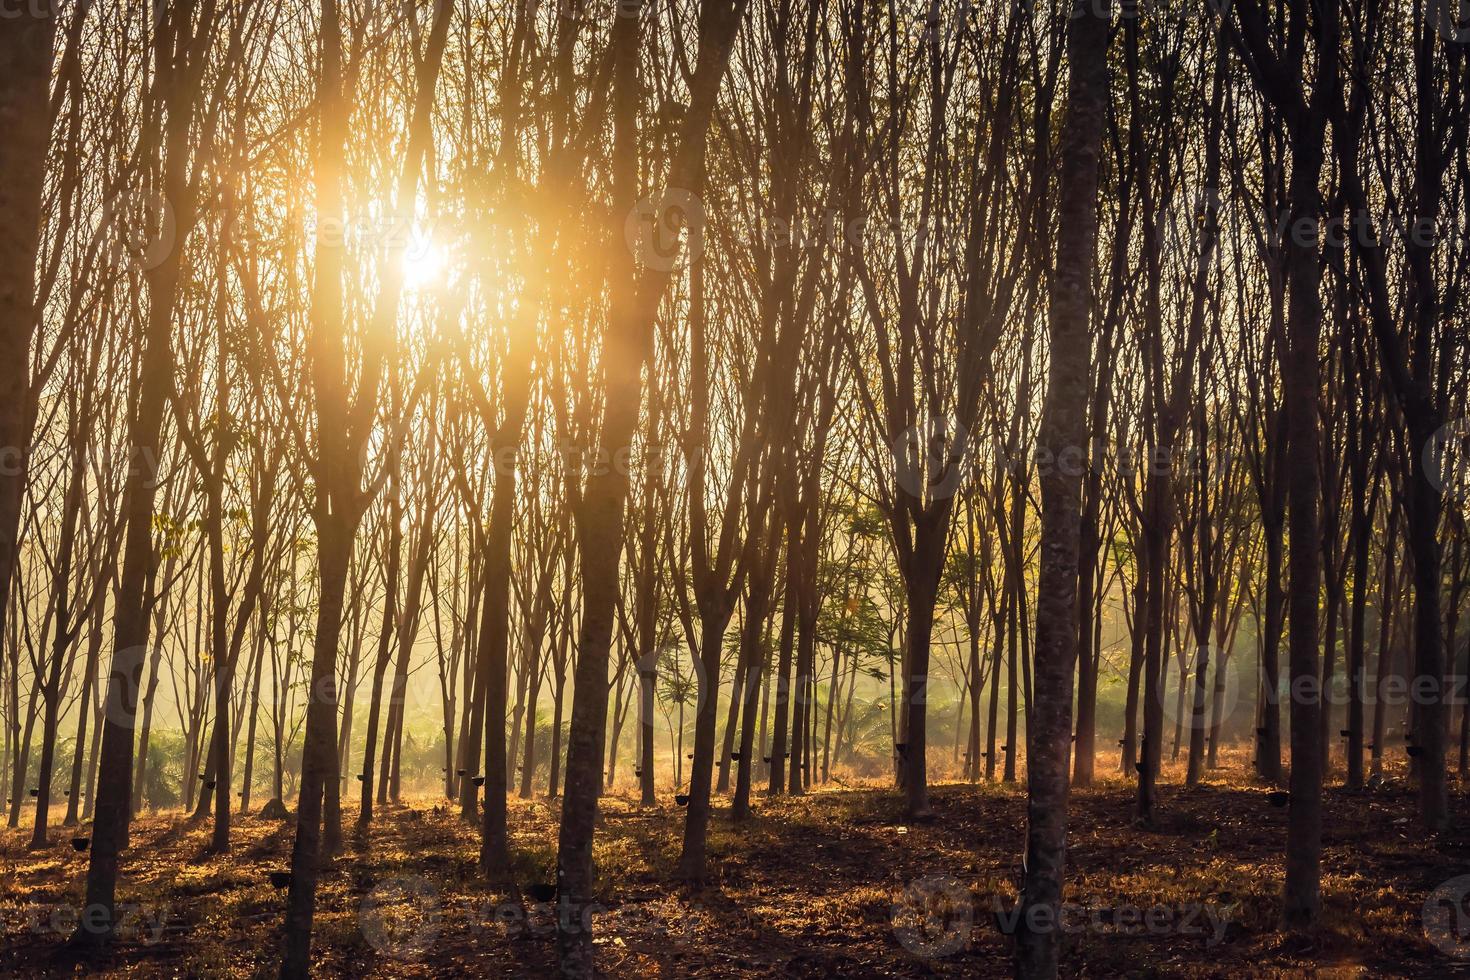 árboles boscosos retroiluminados por la luz del sol dorada antes del atardecer con rayos solares que se derraman a través de los árboles en el suelo del bosque iluminando las ramas de los árboles foto